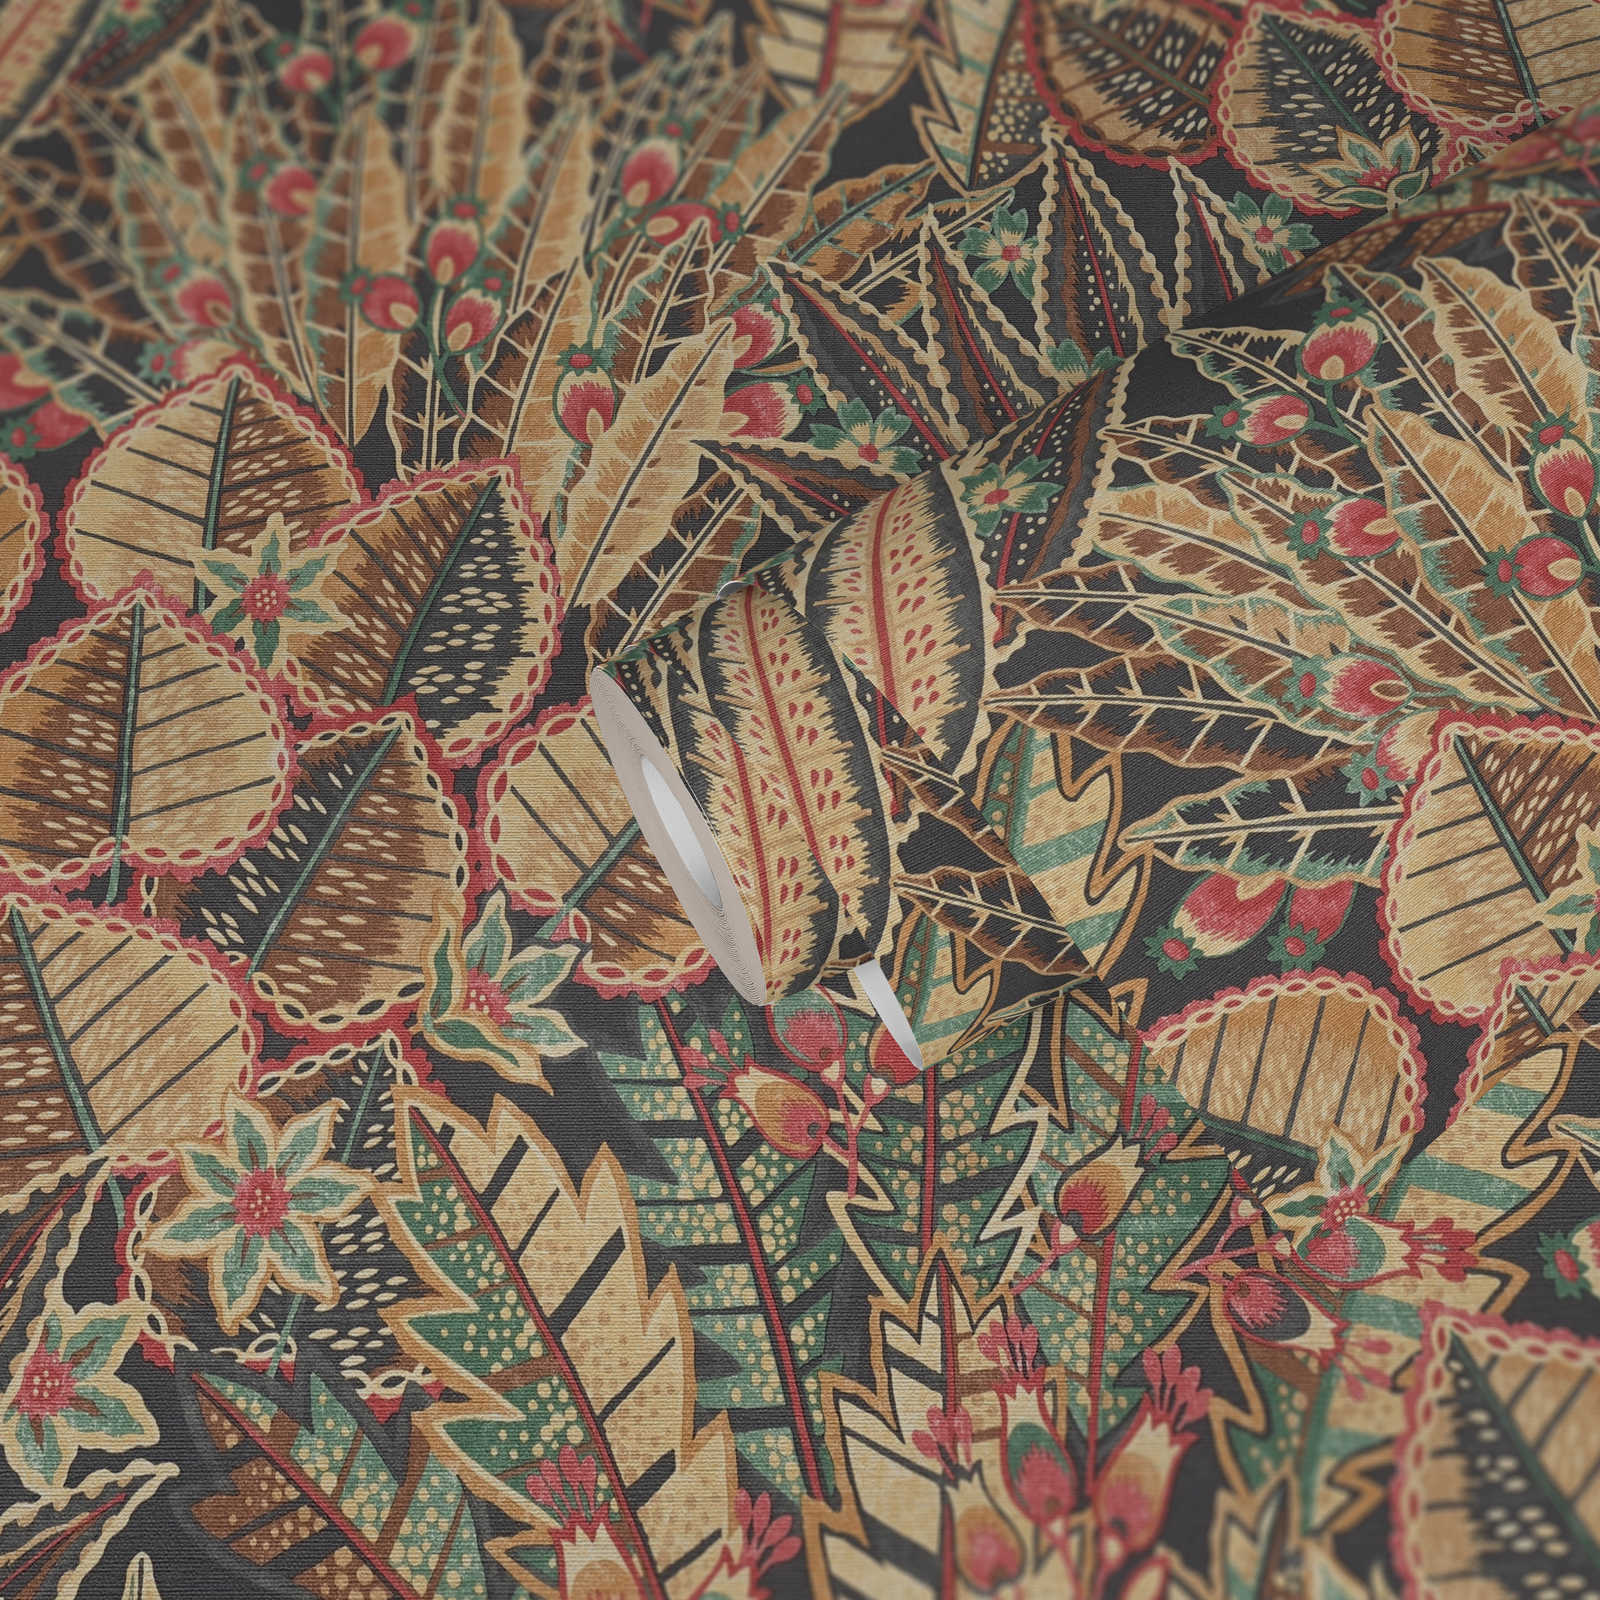             Papel pintado tejido-no tejido floral con motivo abstracto de hojas con toques rojos - marrón, rojo, negro
        